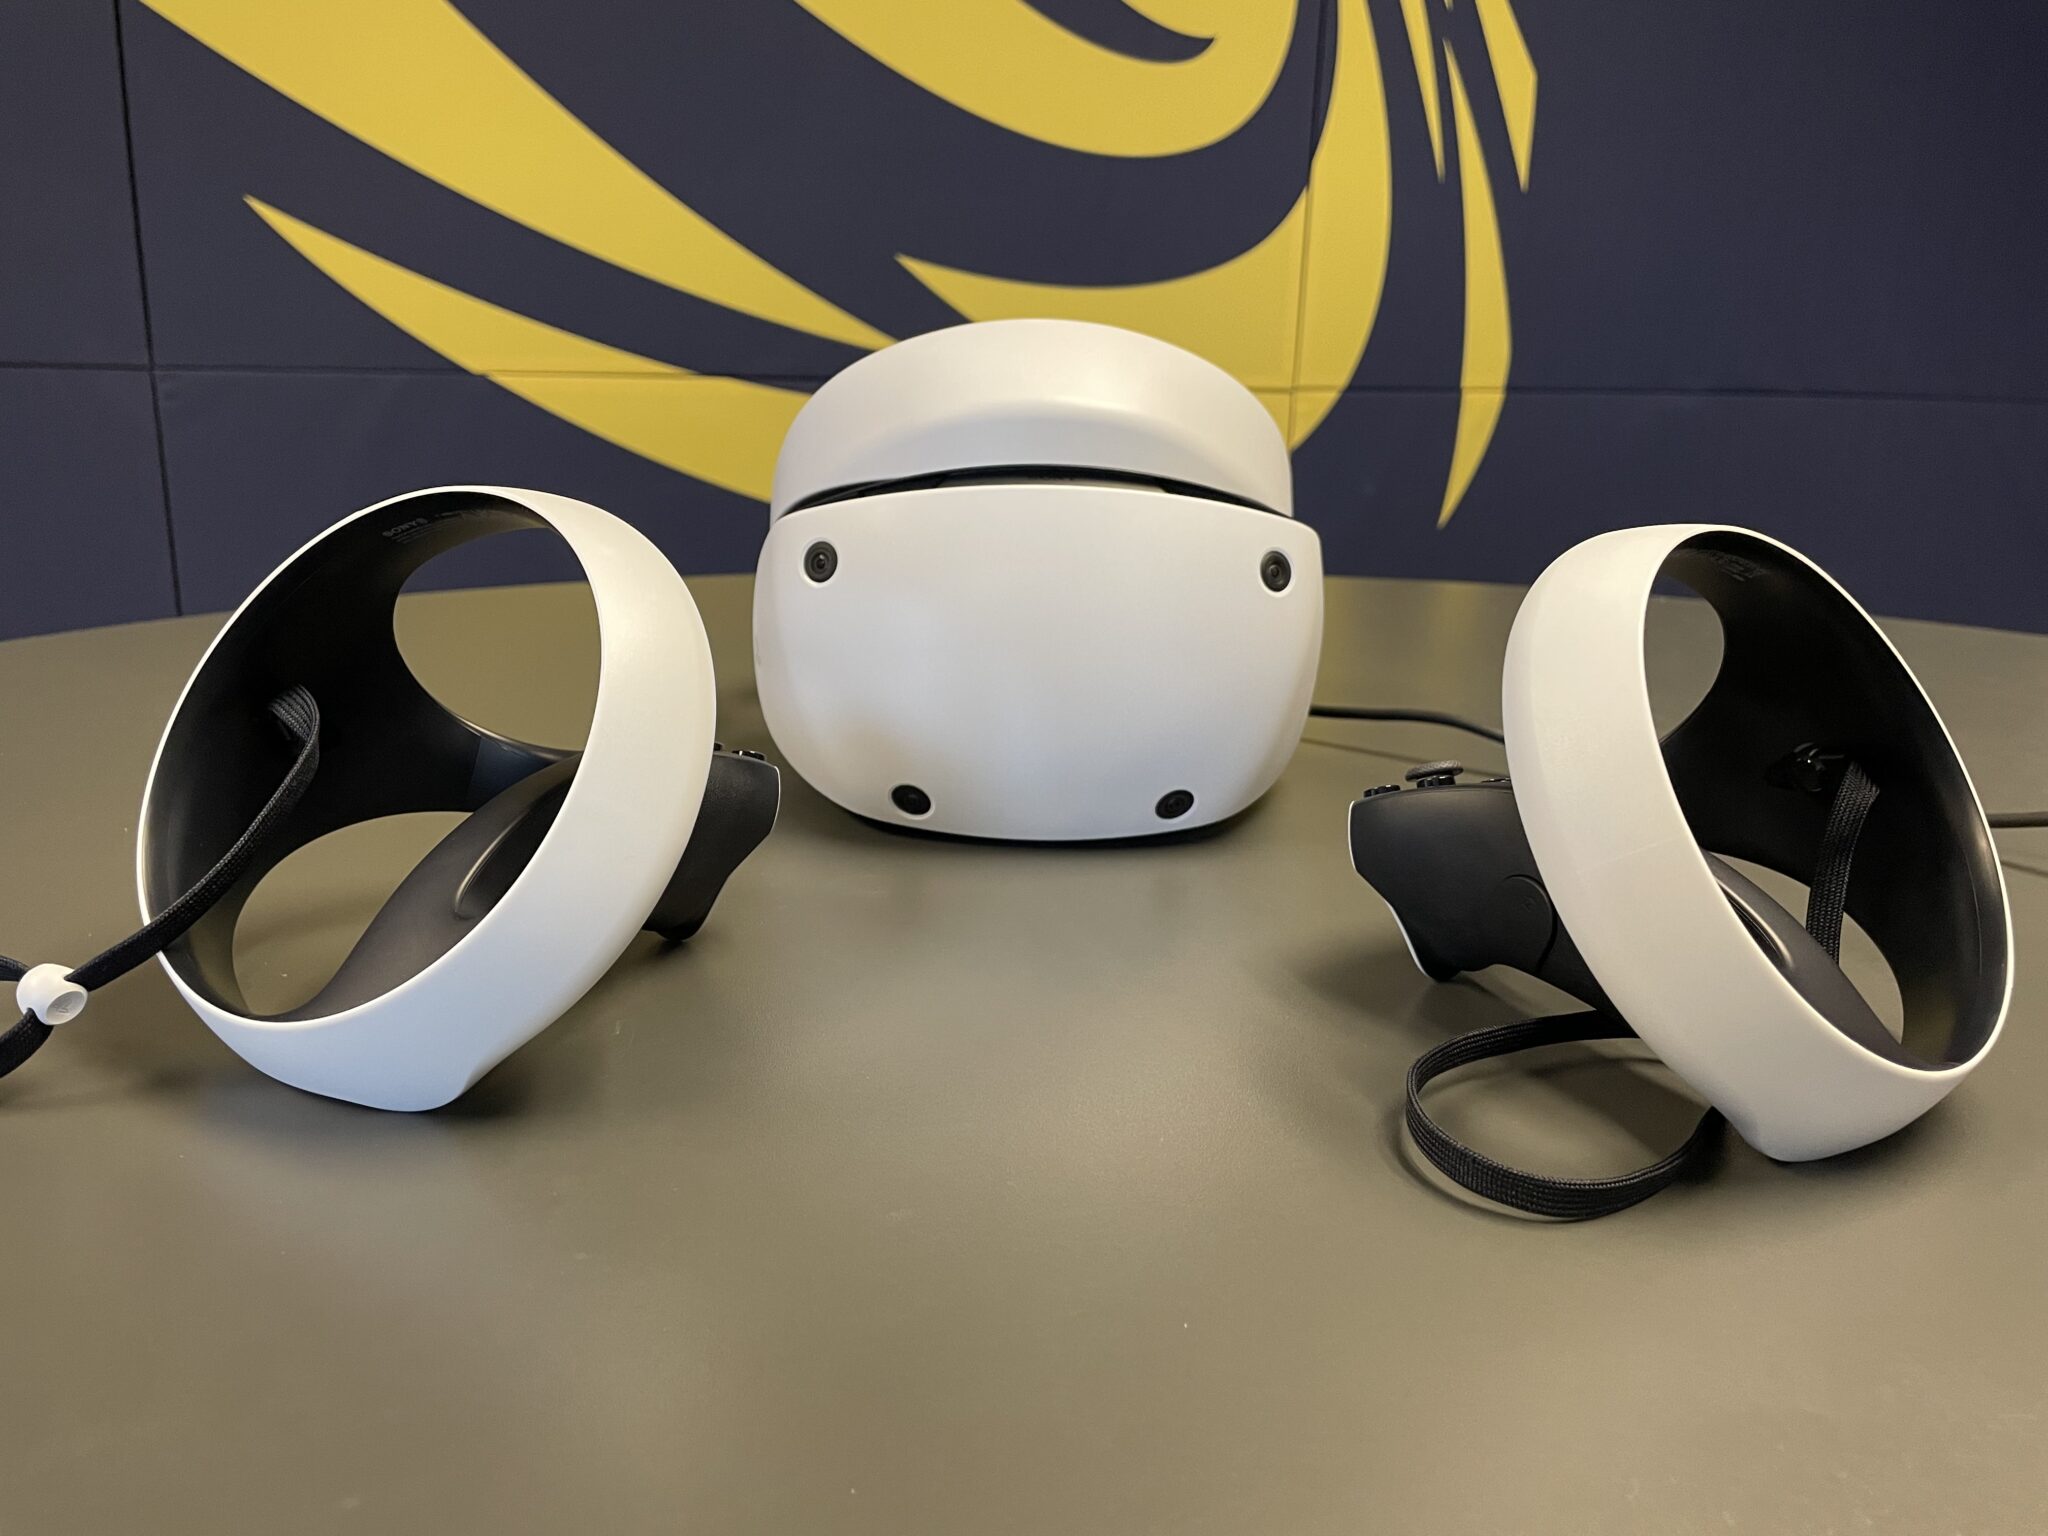 Testujeme PlayStation VR2